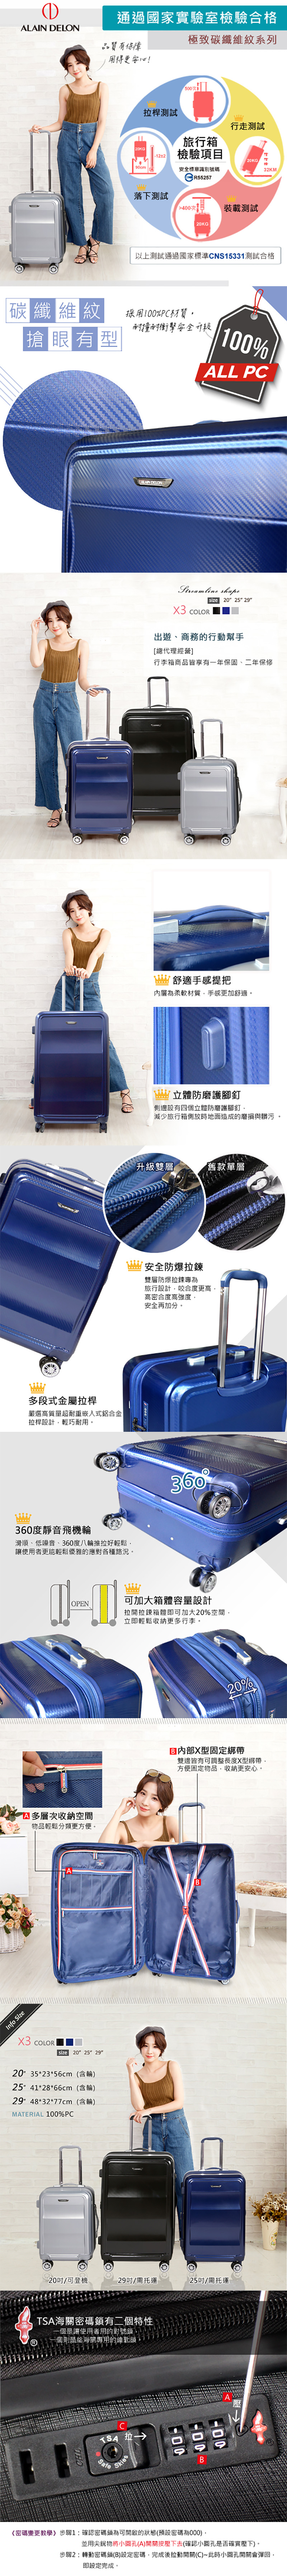 ALAIN DELON 亞蘭德倫 行李箱 25吋 極致碳纖維紋系列旅行箱 319-0125 得意時袋